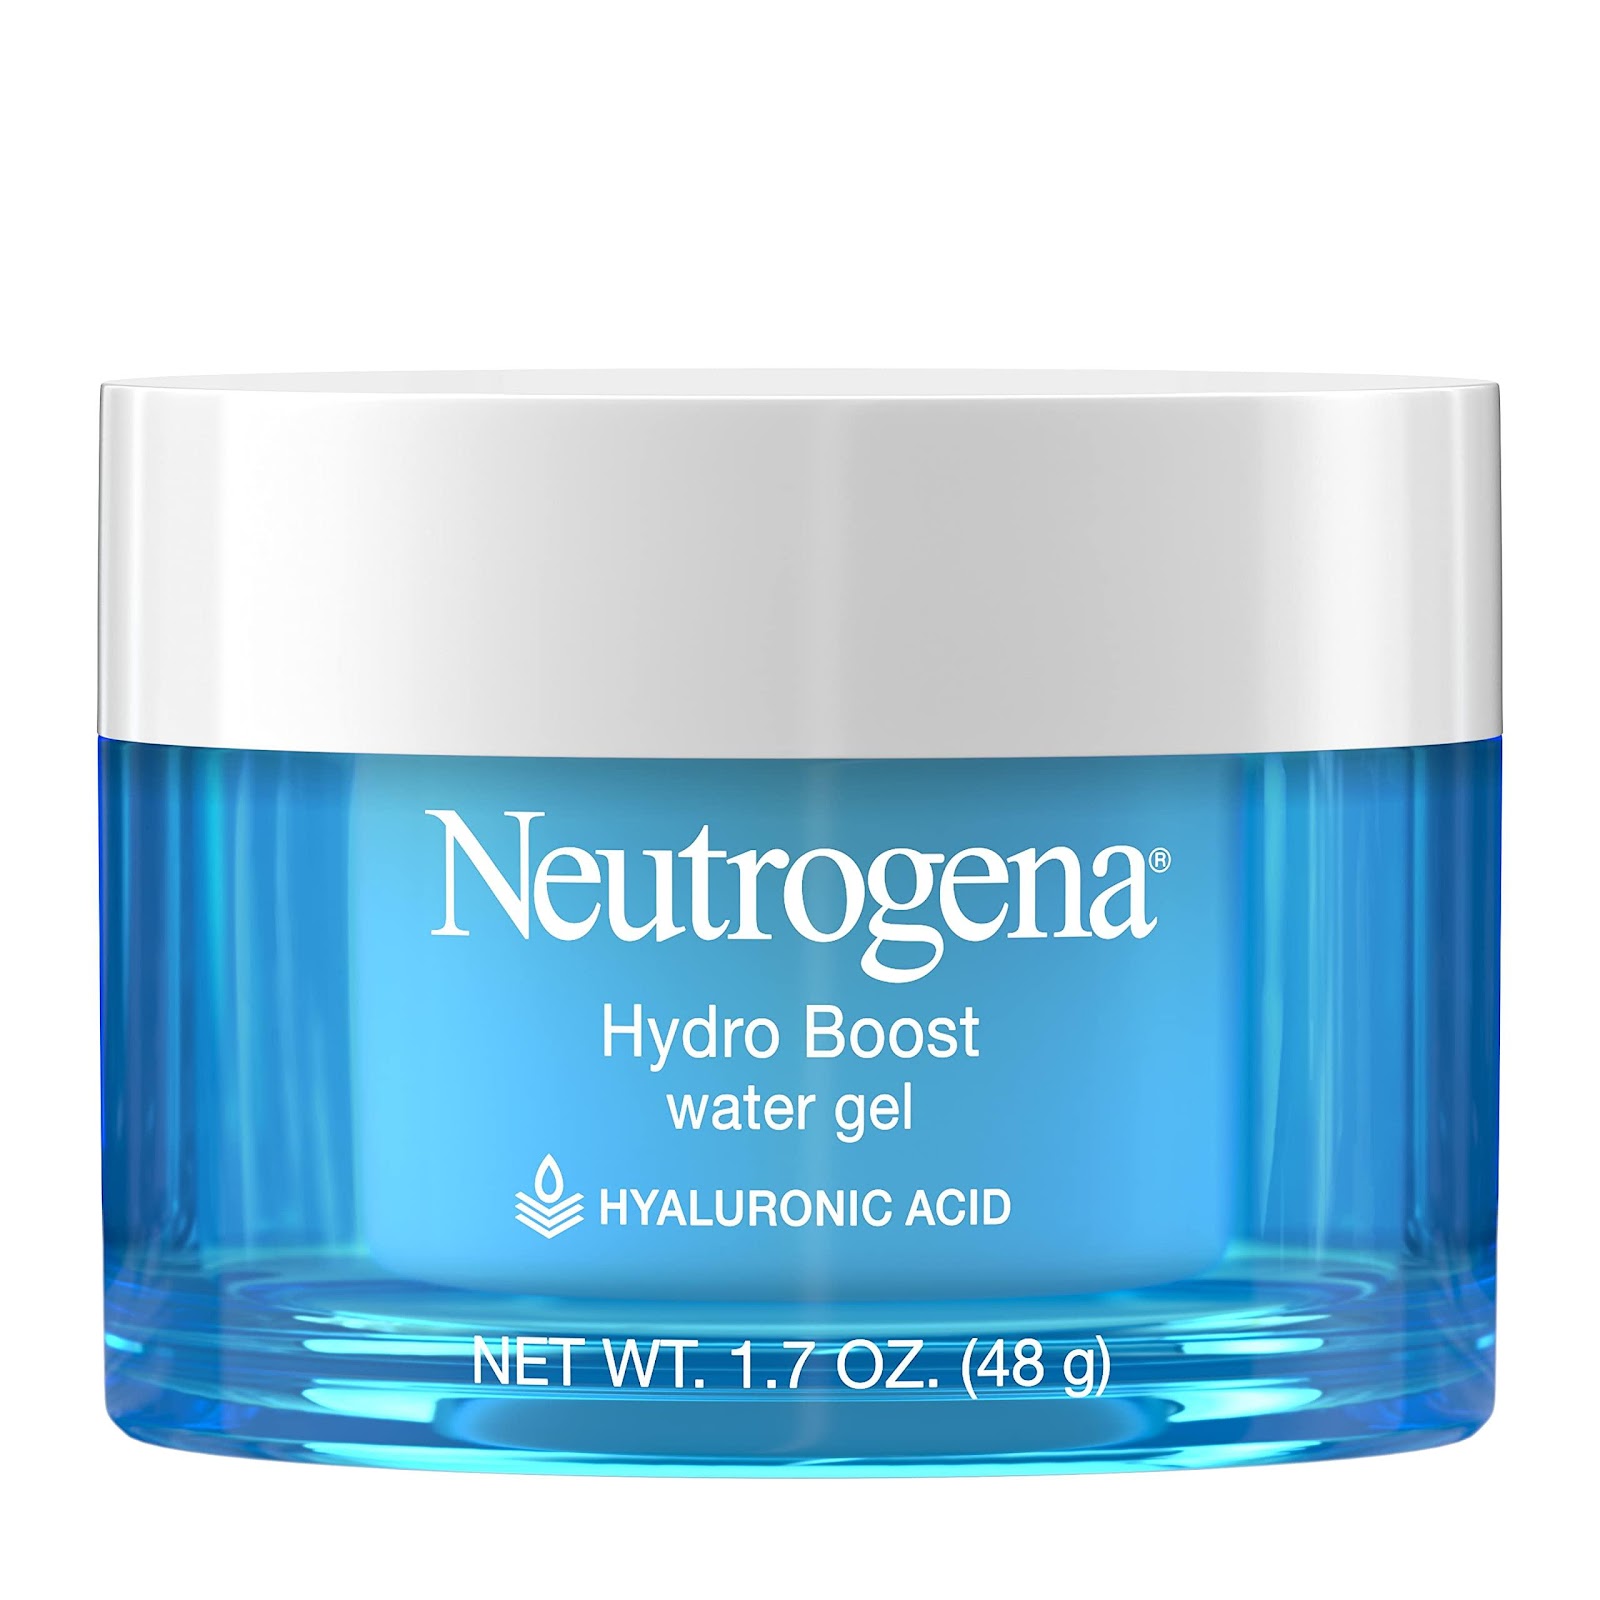 Neutrogena Hydro Boost Water Gel 1.7oz (2 Pack) : Amazon.in: Beauty